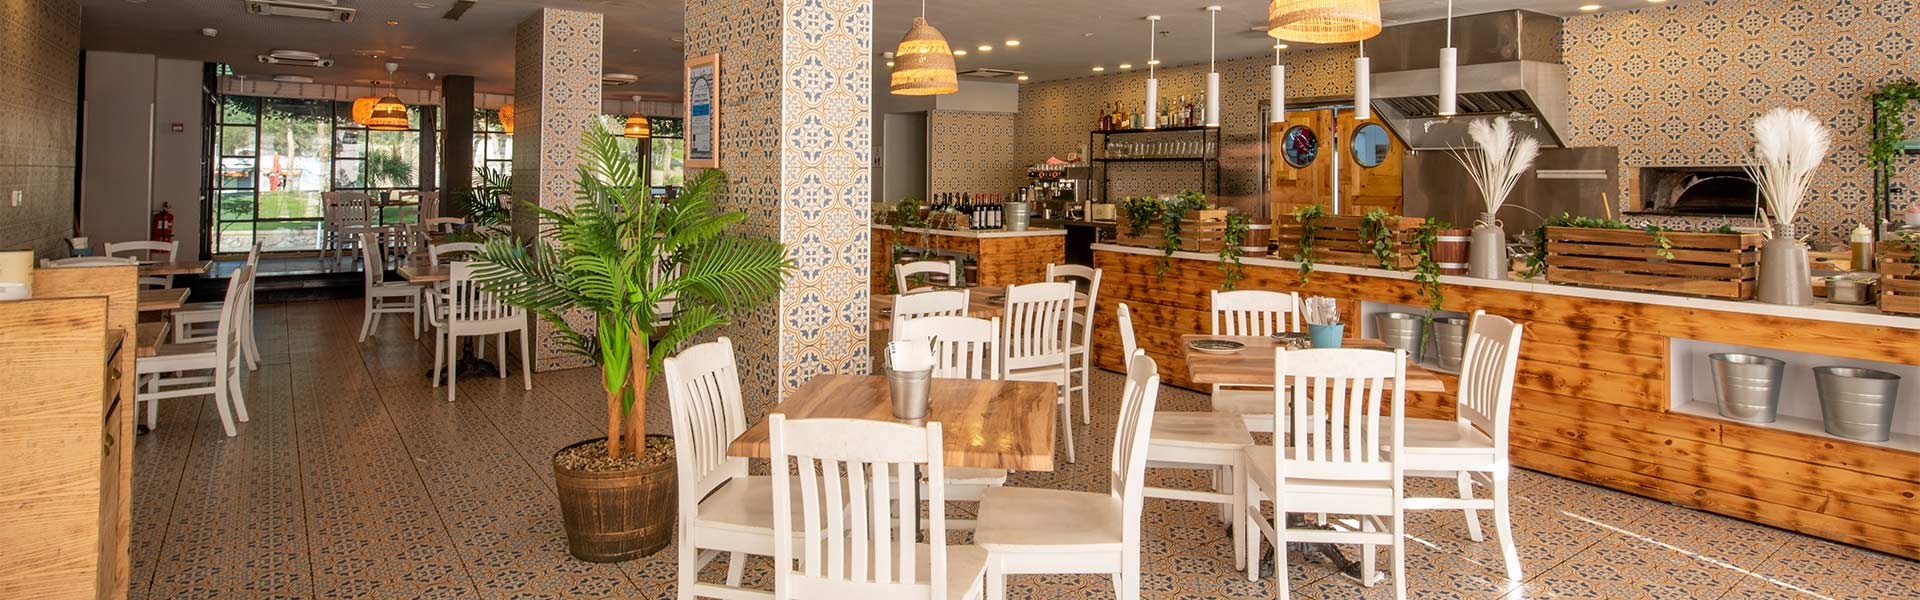 PLAY Eilat Hotel - Culinary